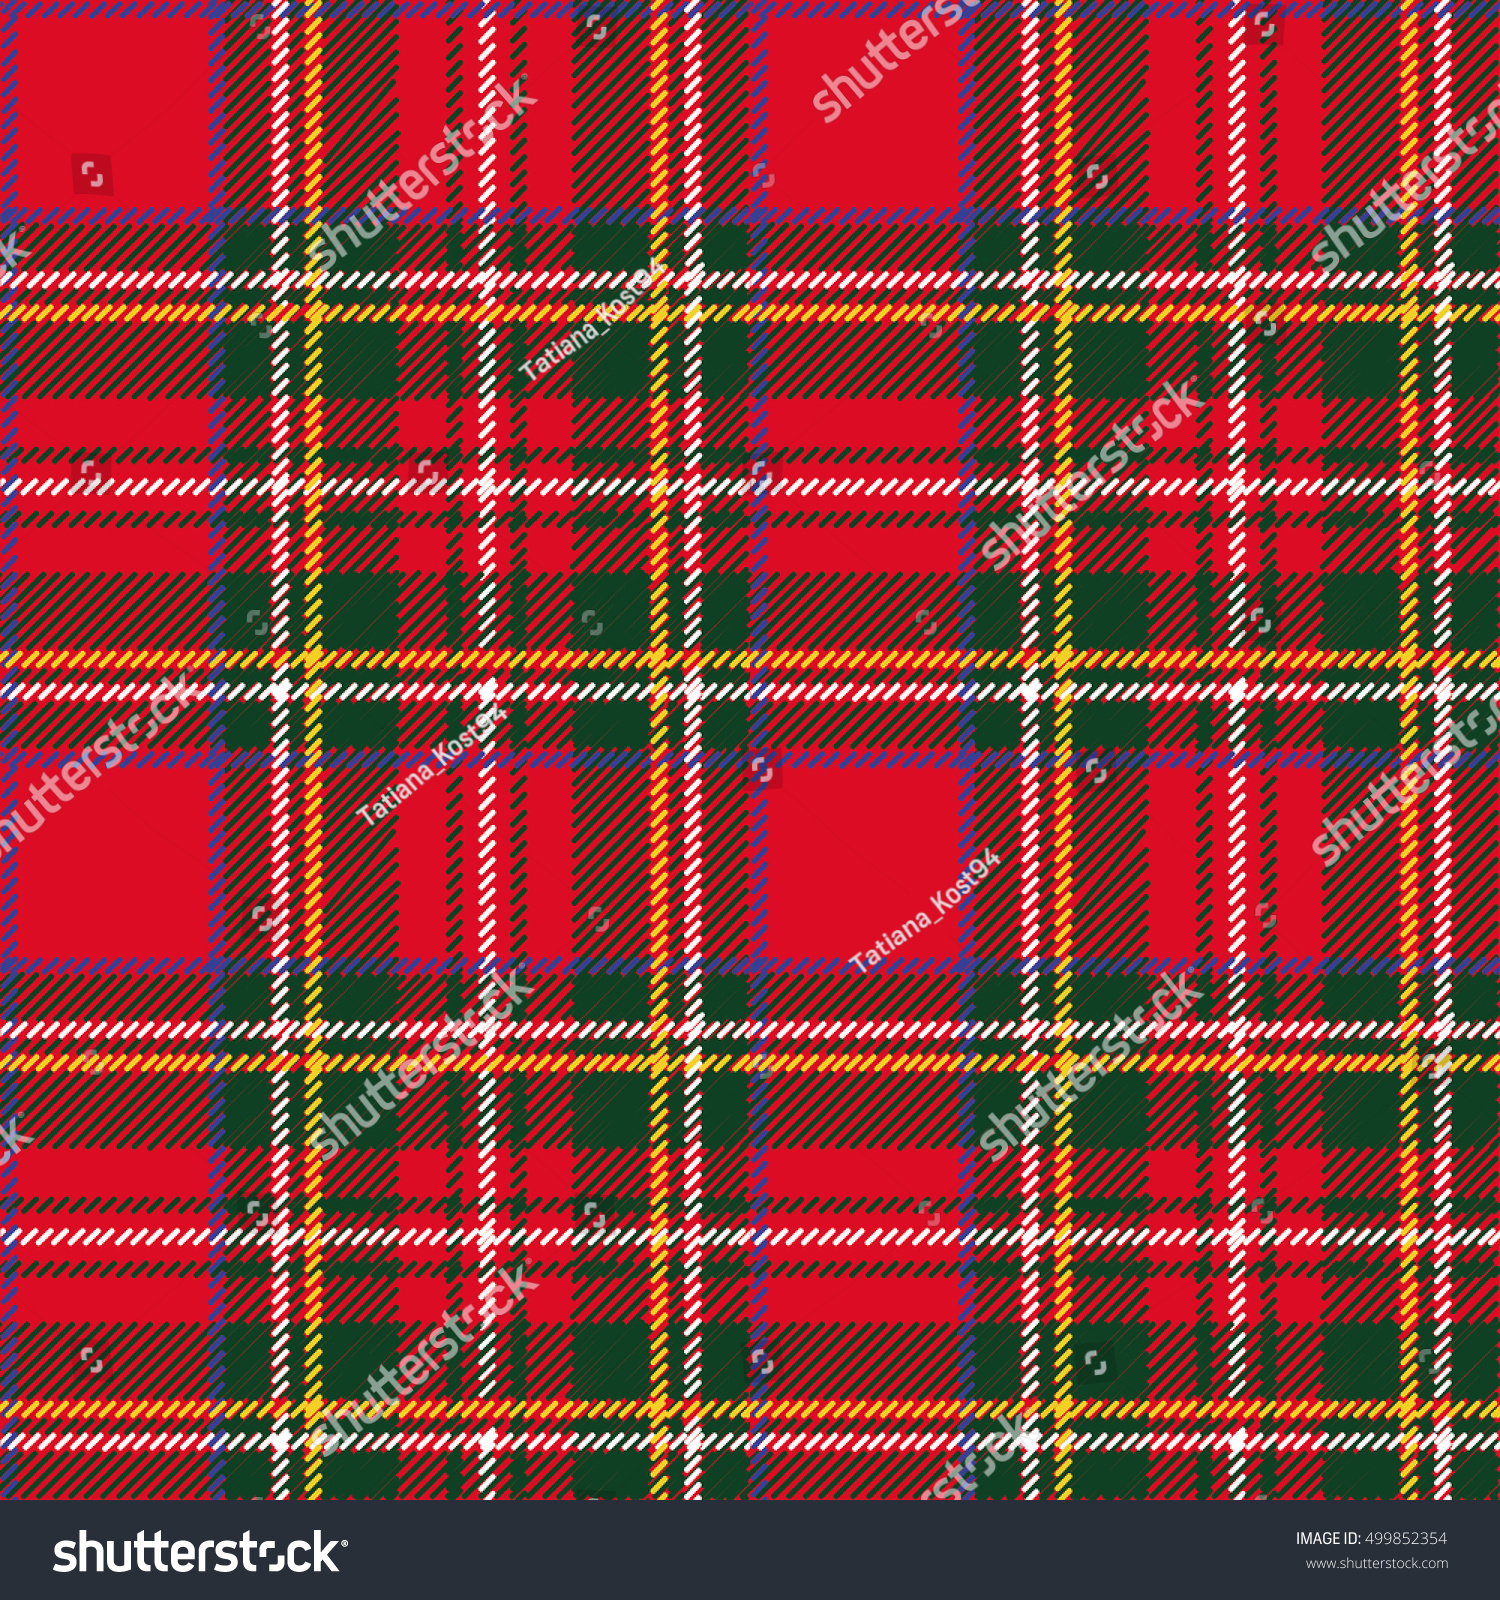 タータン シームレスな模様 壁紙 折り返し紙 織物 ファッションイラスト ベクター画像 背景 クリスマス 年賀状 伝統的な赤 黒 緑のスコットランドの装飾 レトロなスタイル のベクター画像素材 ロイヤリティフリー